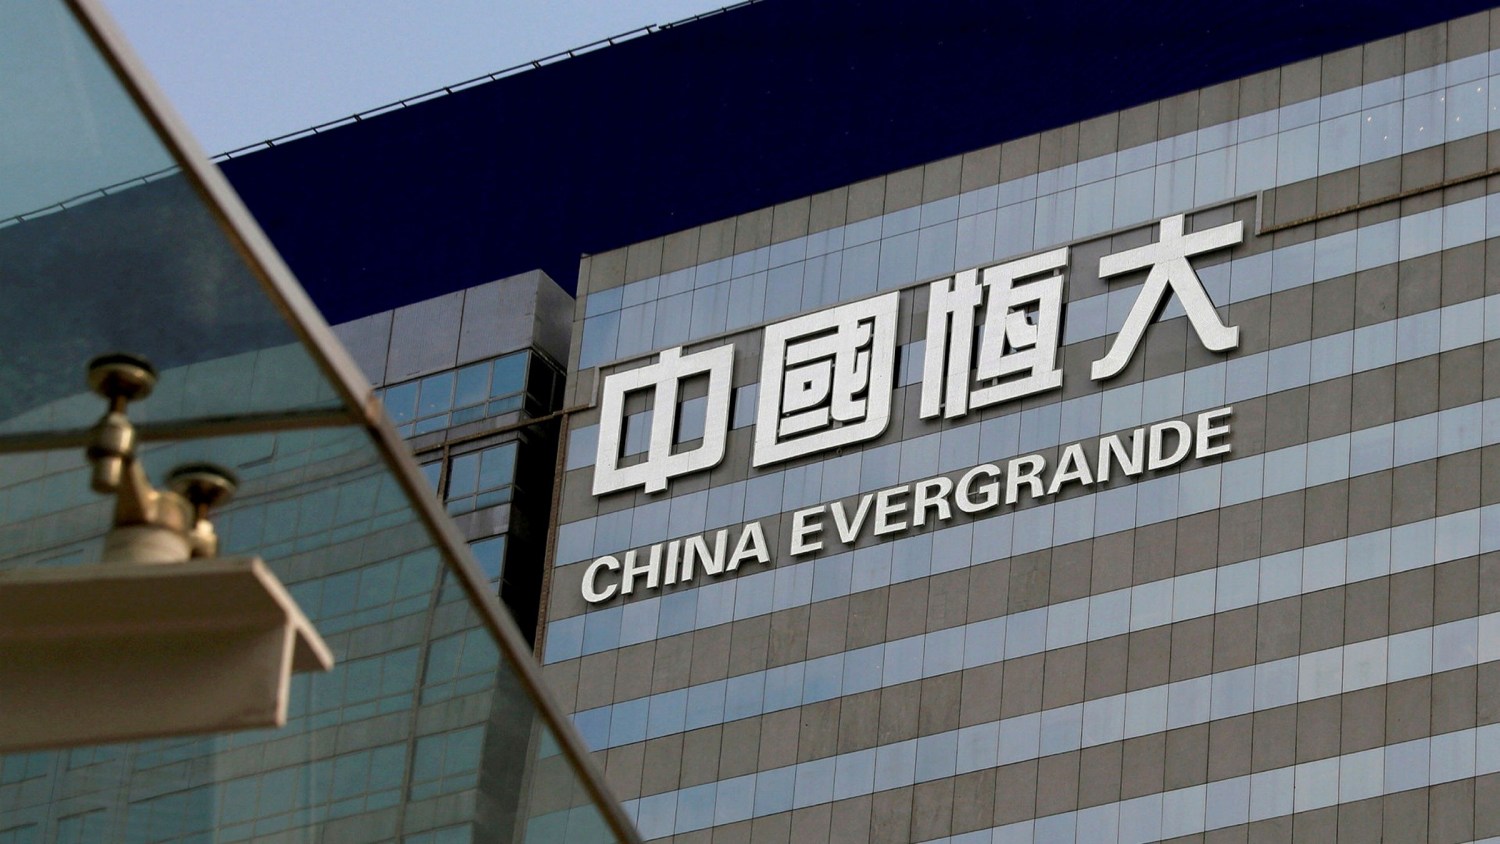 Anúncio do gigante Evergrande fez com que as bolsas de valores de todo o mundo despencassem